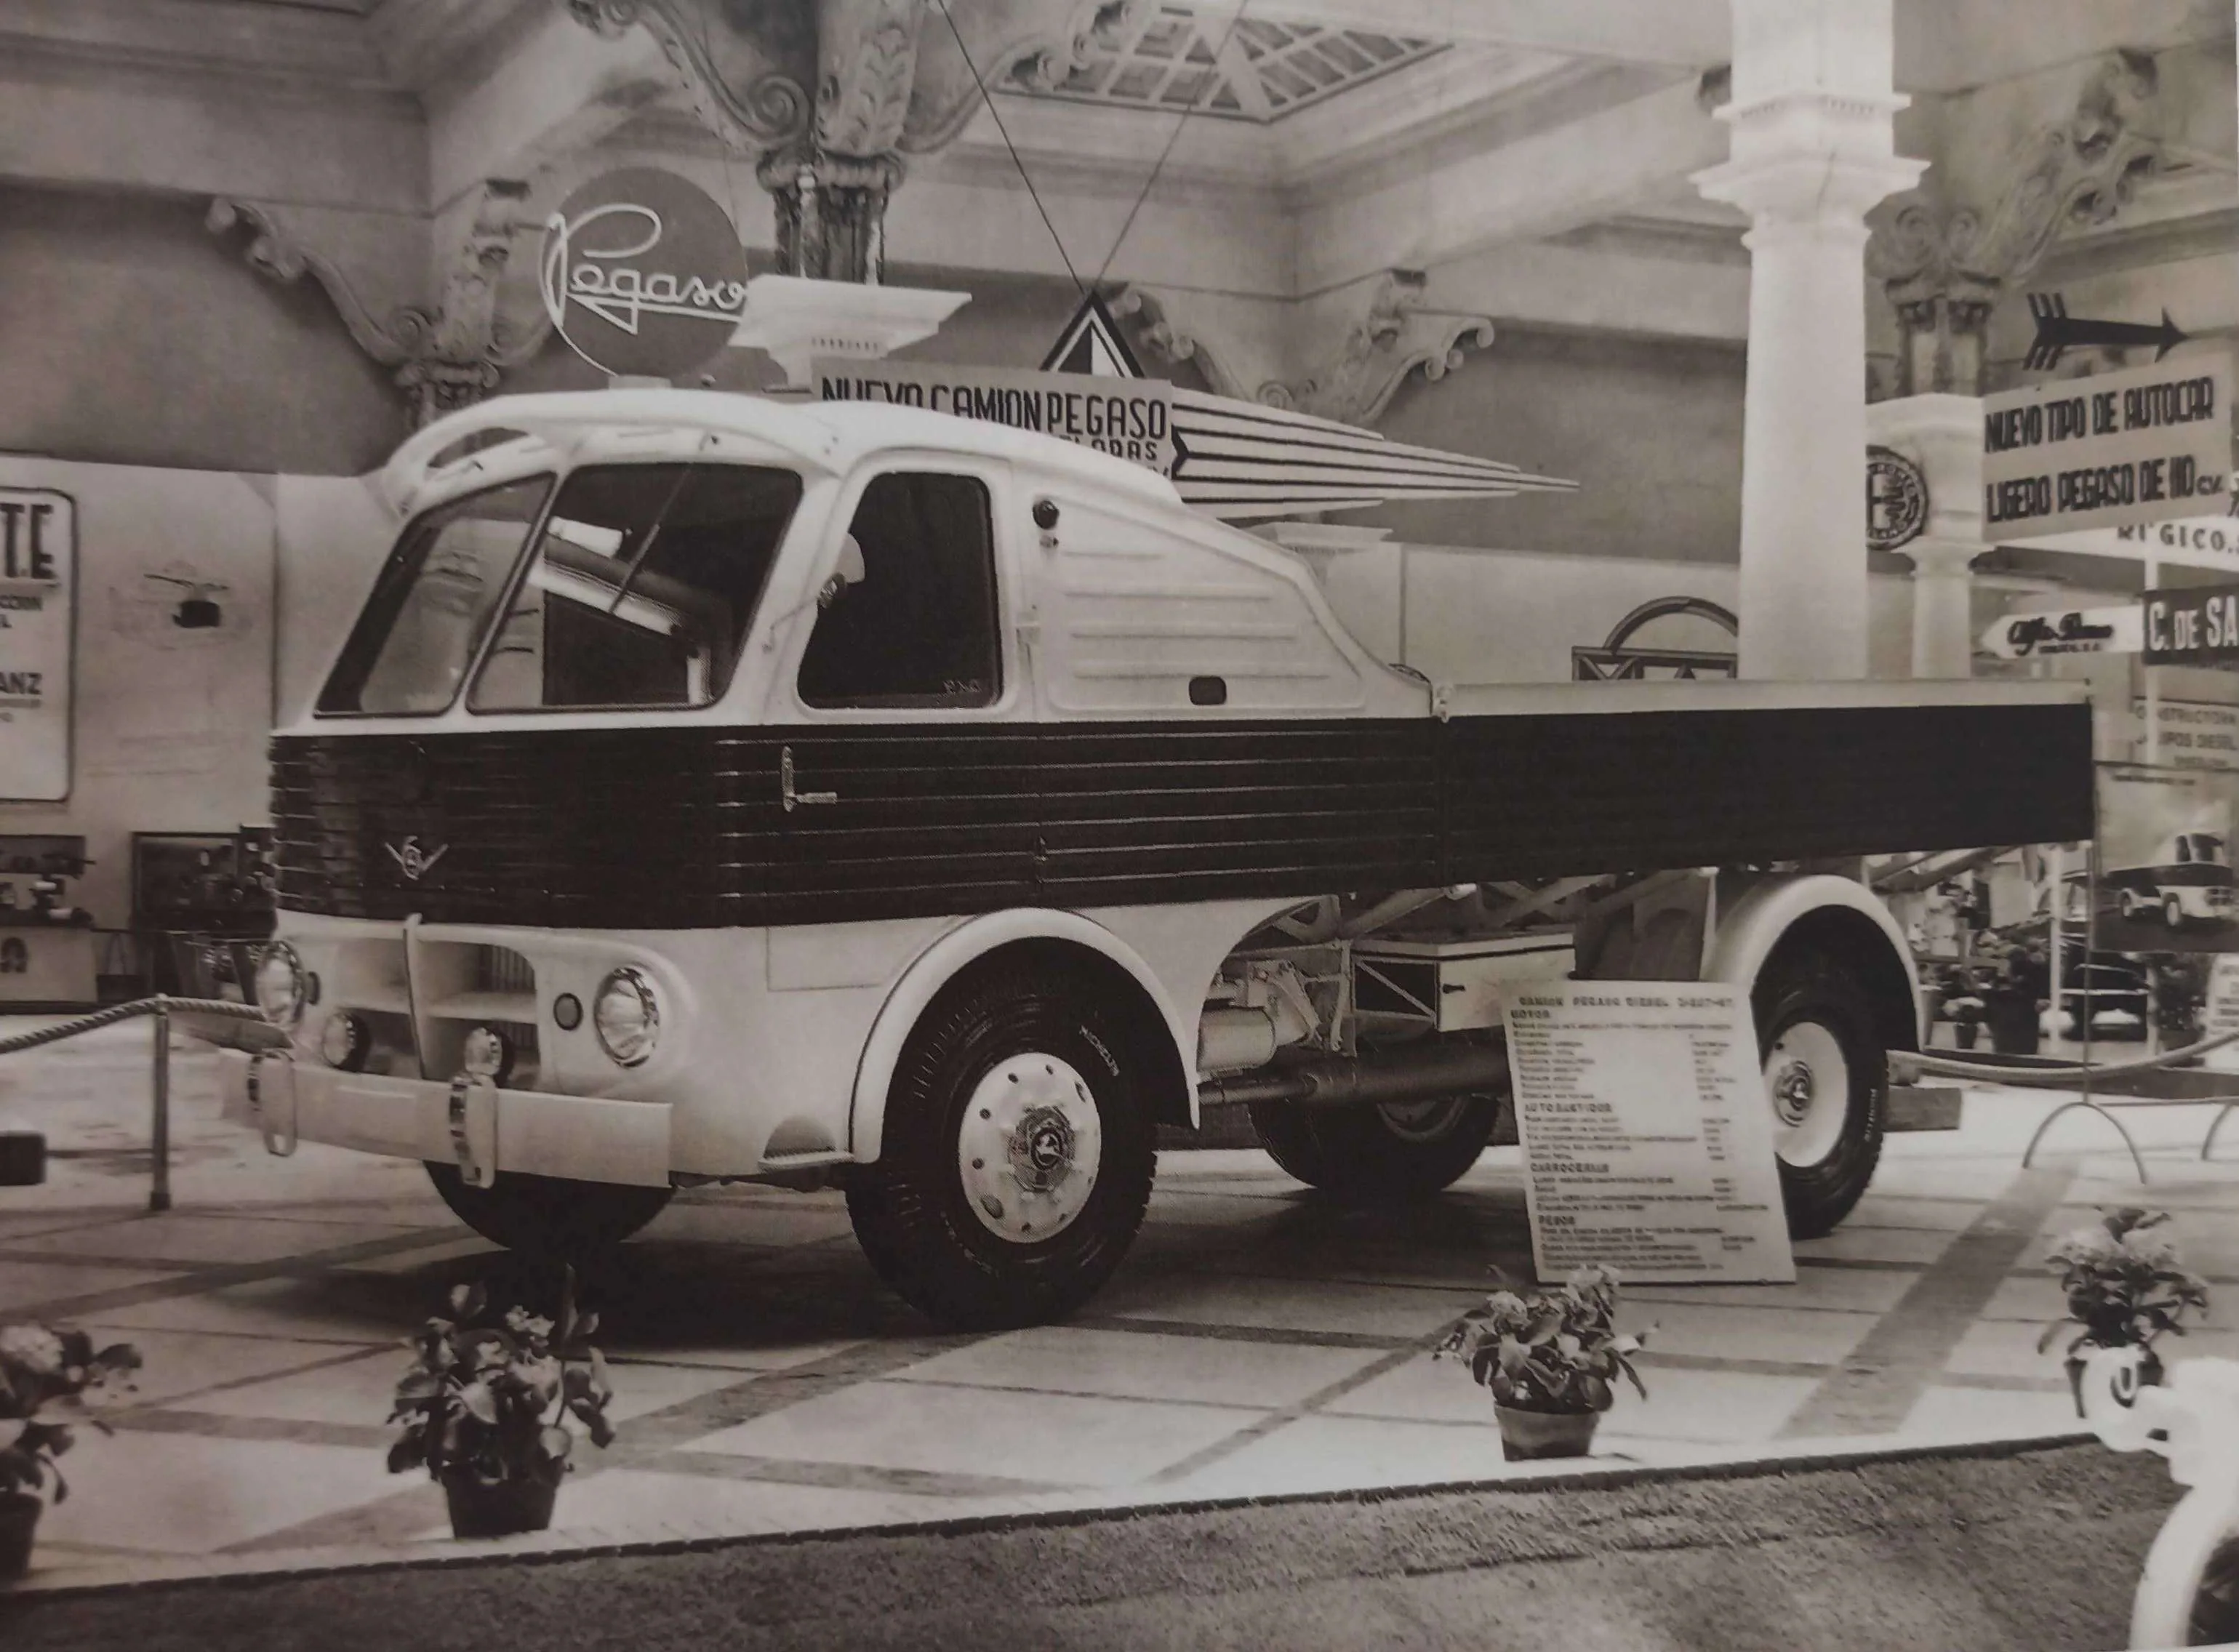 El primer camión Z-207 “Barajas” (1954-55). La producción del camión Z-207 se inició a finales de 1954 con la terminación de la  nueva fábrica en Barajas. Fue el primer camión genuino Pegaso; ni su nuevo motor en  V de 120º, ni el diseño de cu carrocería, recordaban ya a los tiempo de Hispano-Suiza.  El motor diésel desarrollado a partir del bloque Hispano-Suiza 66 fue todo un éxito. Esta  tecnología tenía muchas posibilidades y Pegaso comenzó a desarrollar un nuevo motor  diésel, más pequeño, moderno y eficiente, que sería el corazón de un camión  completamente nuevo y diseñado desde cero. El Z-207 tenía un peso máximo  autorizado de 11.000 kilos y alcanzaba más de 90 km/h. Fue un camión muy avanzado,  con motor diésel de aluminio de inyección directa y suspensión delantera independiente.  Se vendieron 4.412 unidades de este modelo.